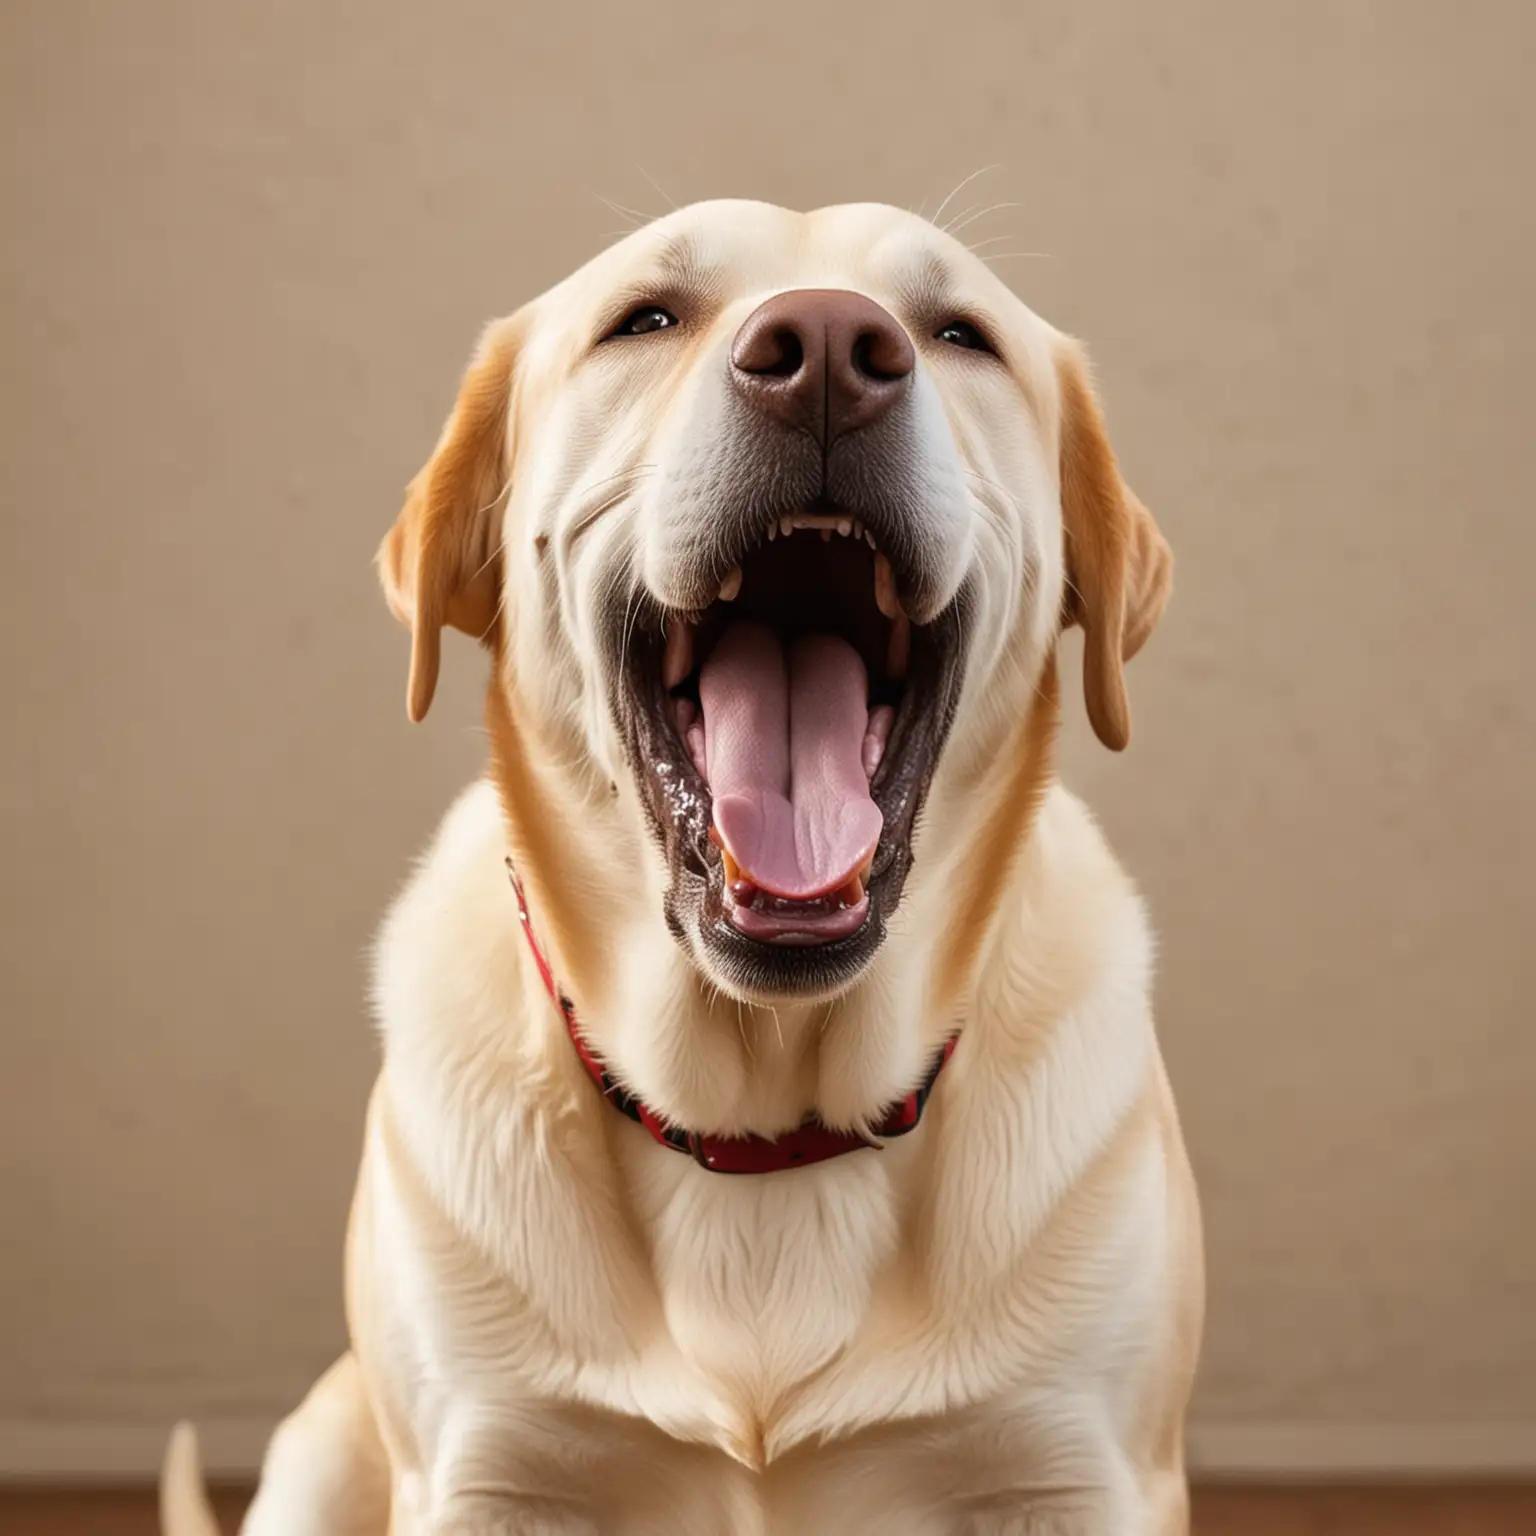 A Labrador Retriever with a big yawn.